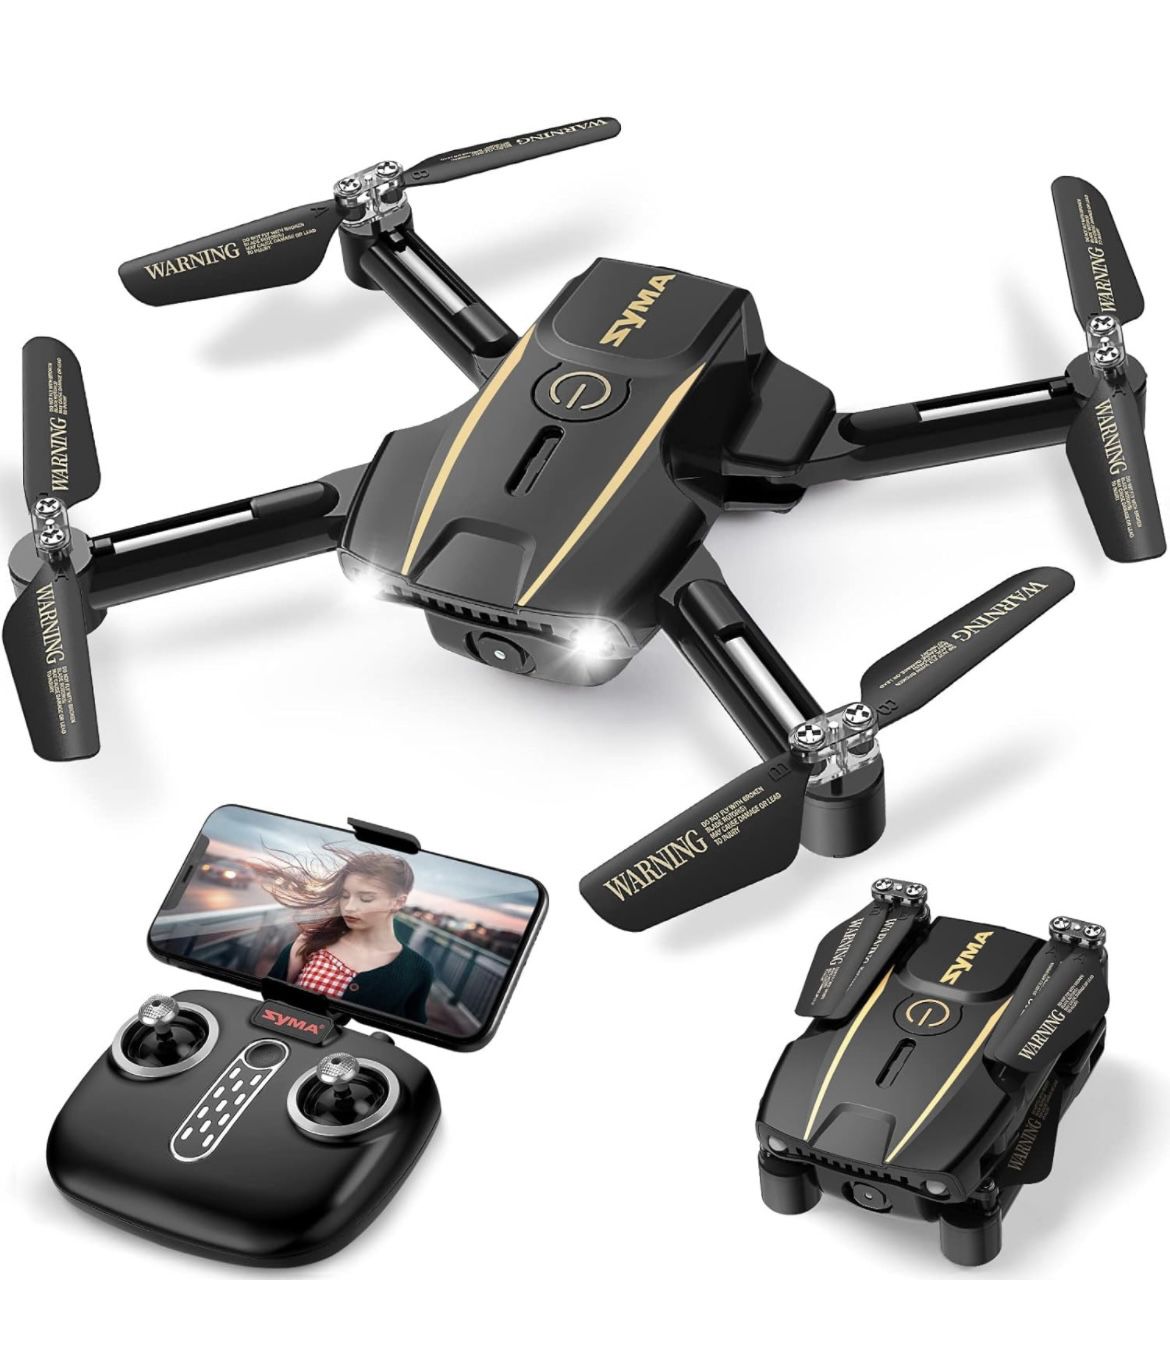 Mini Drone with Camera *BRAND NEW* 720P HD FPV Camera Remote Control Quadcopter